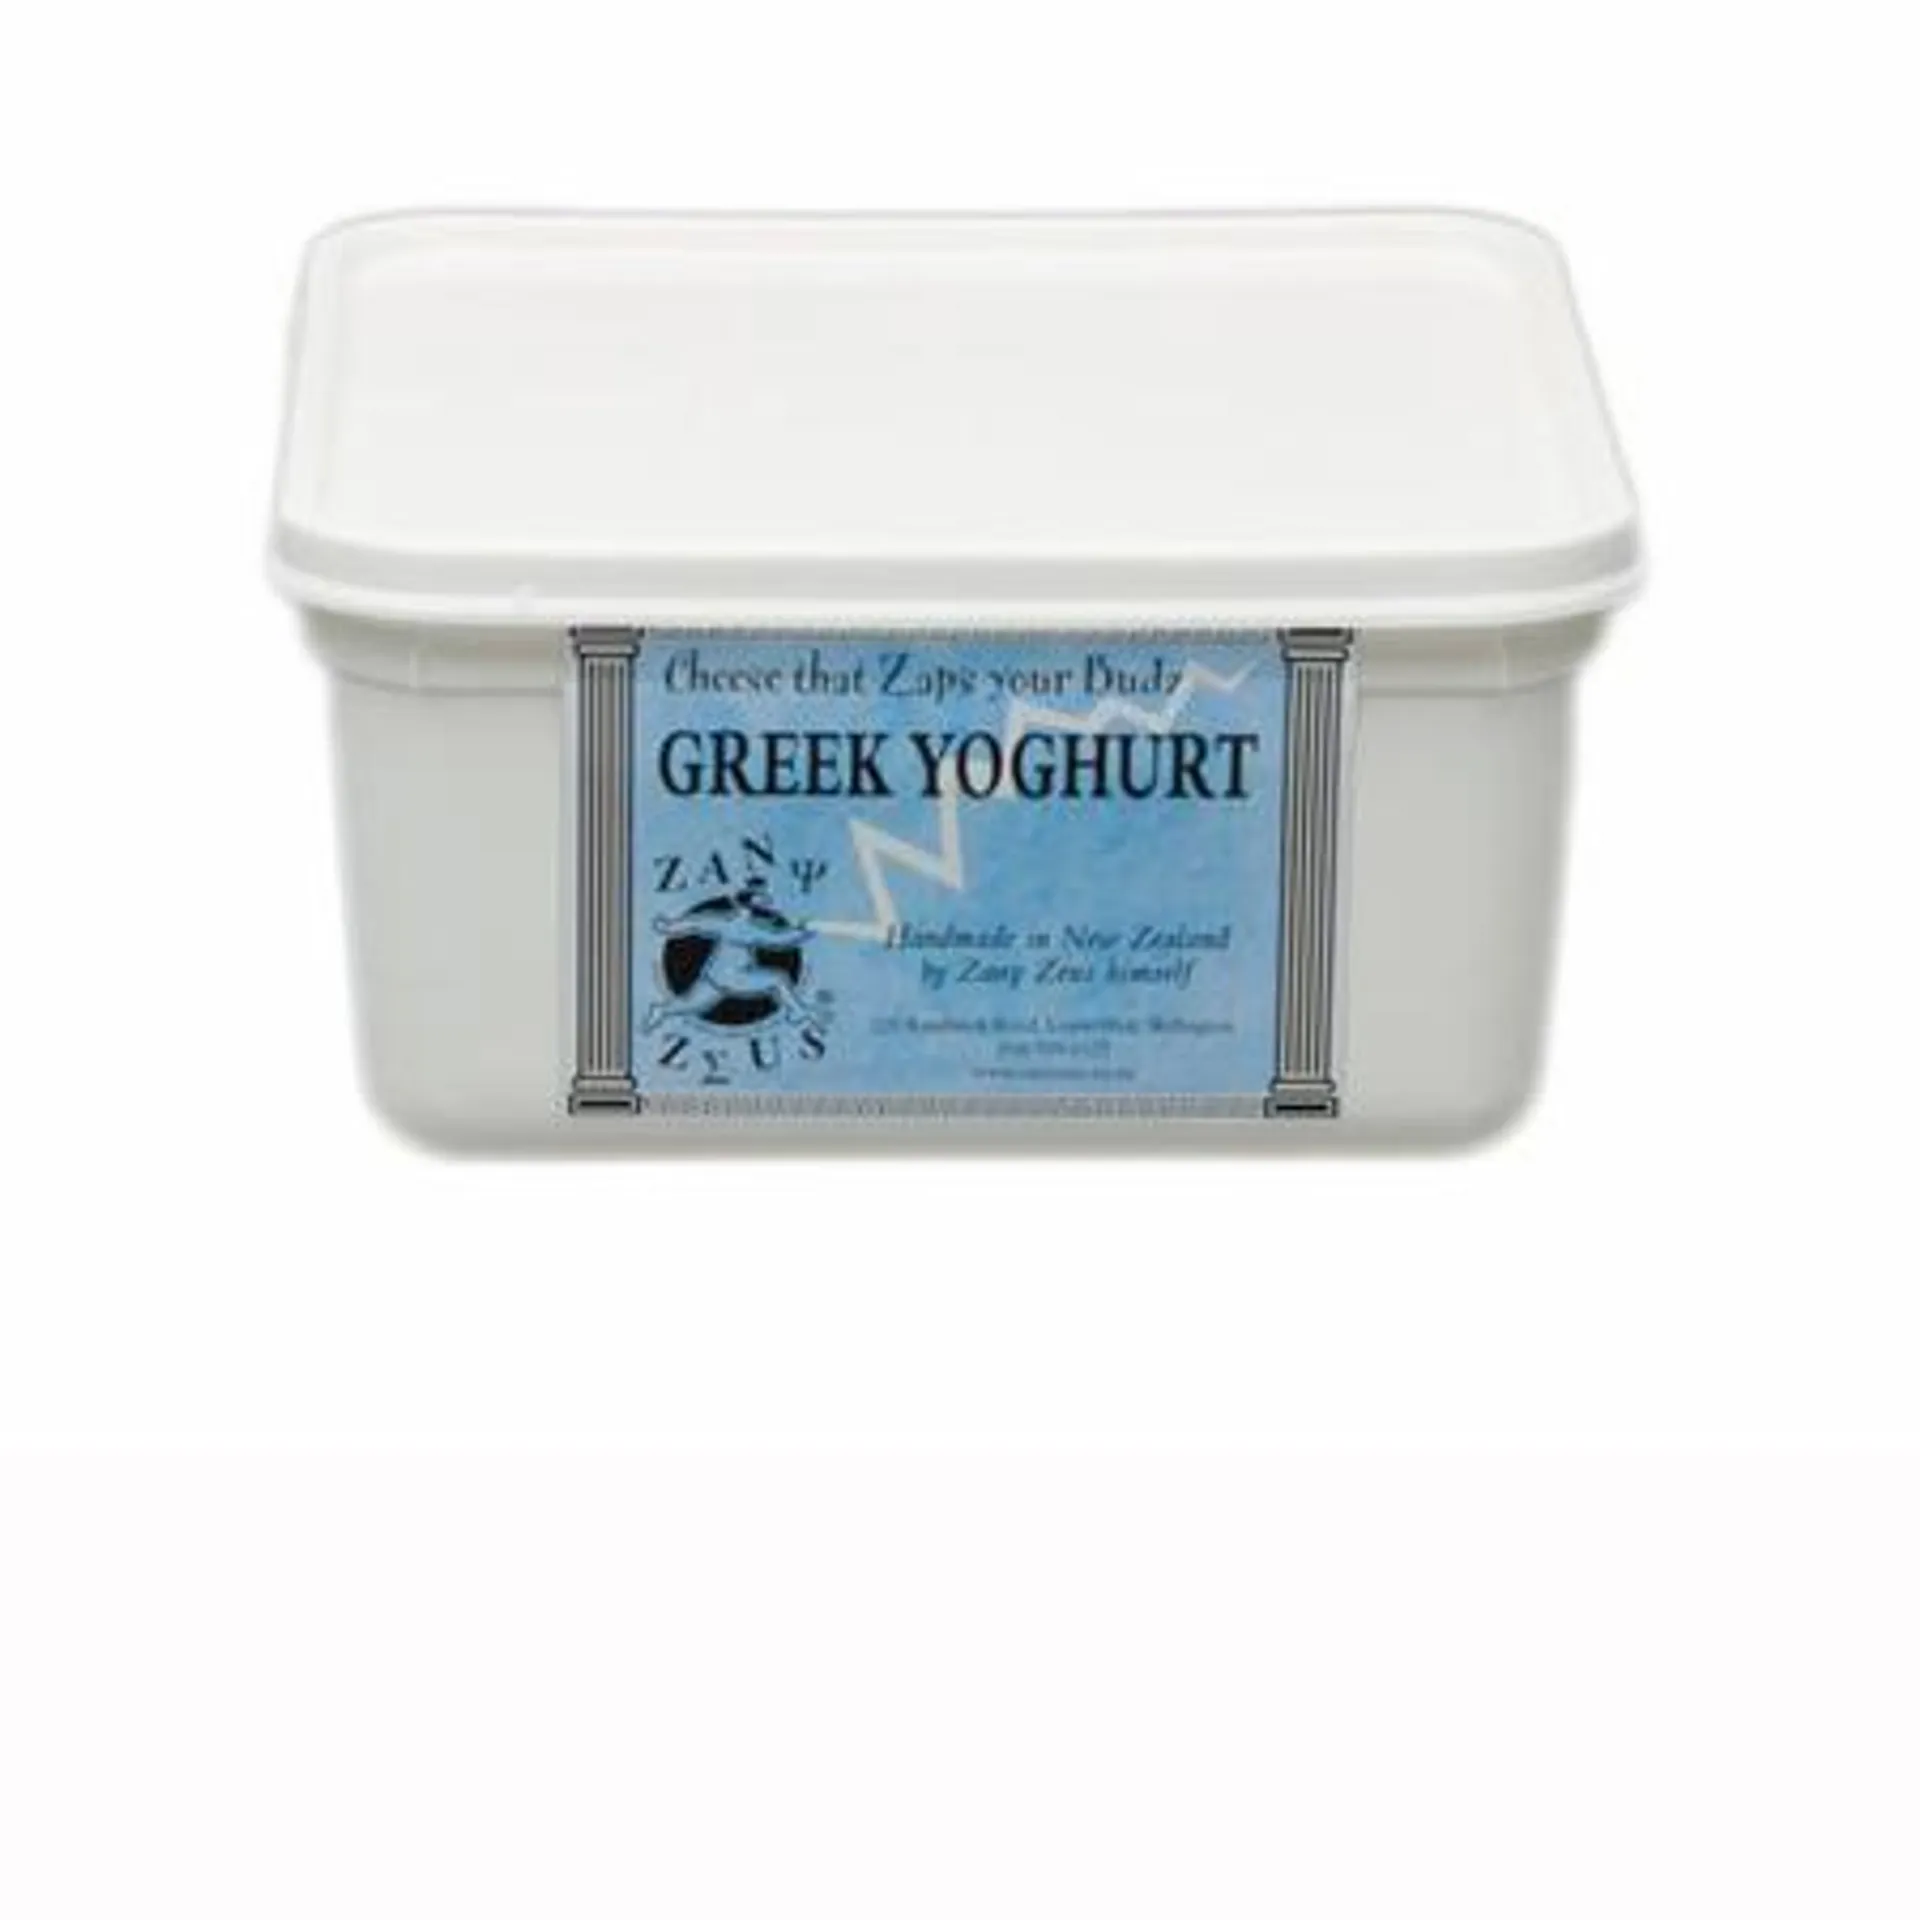 Zany Zeus Greek Yoghurt